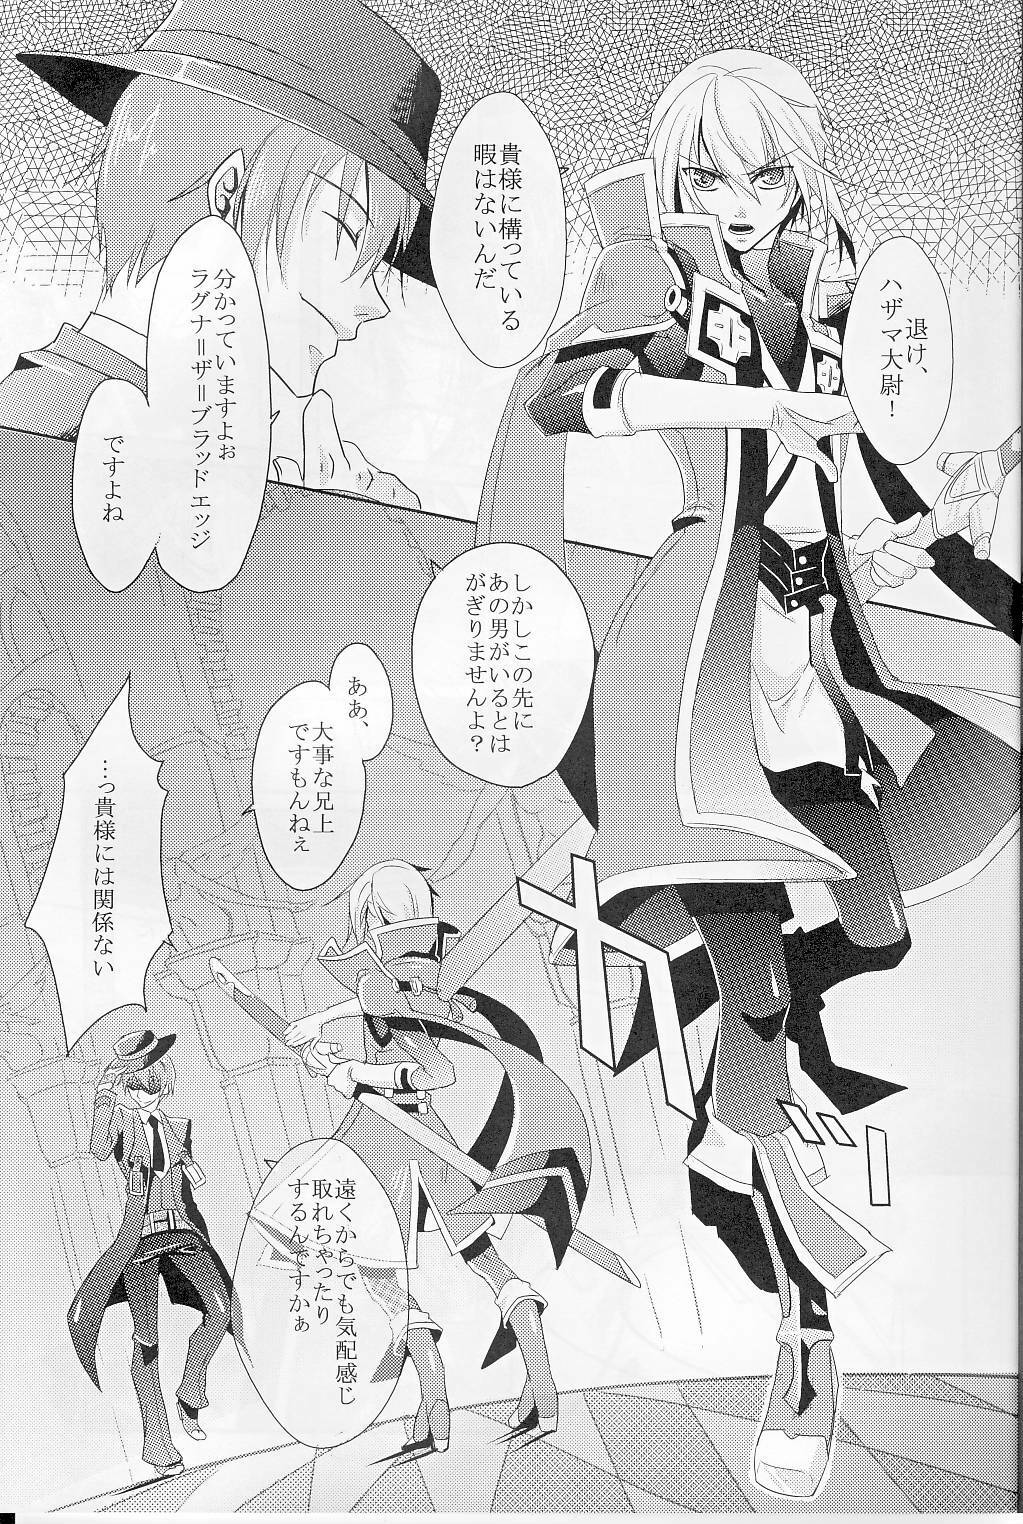 [smat. (Akatsuki Tomato)] Silly (BLAZBLUE) page 4 full